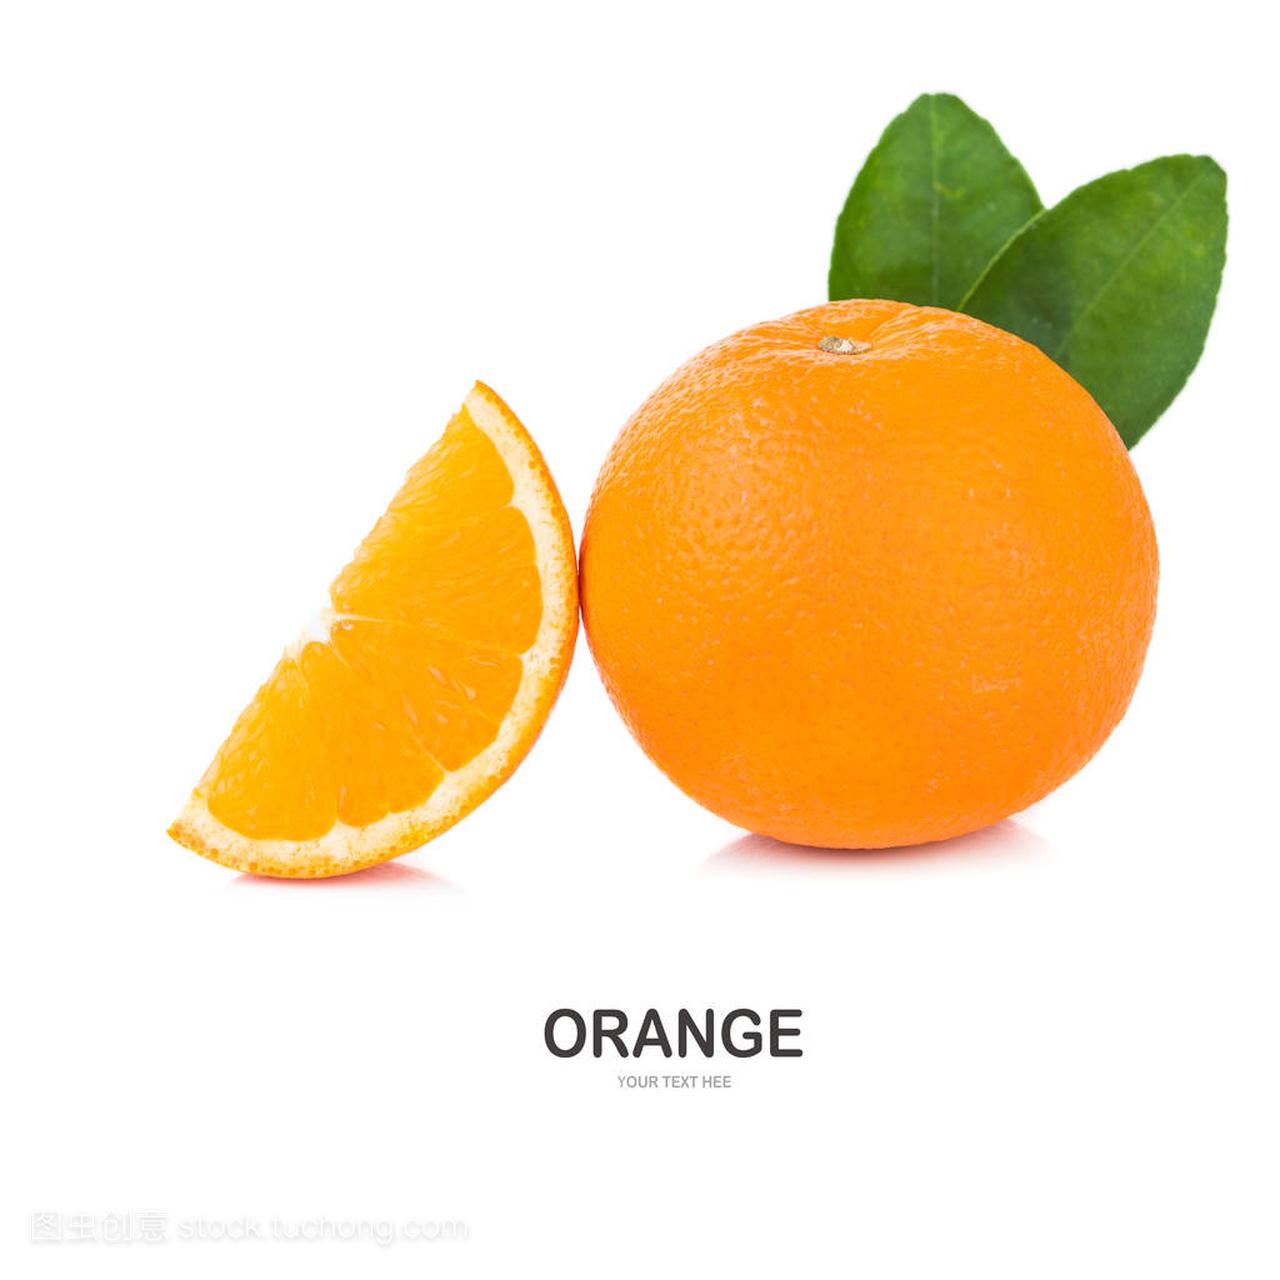 Orange fruit with orange leaves isolate on 